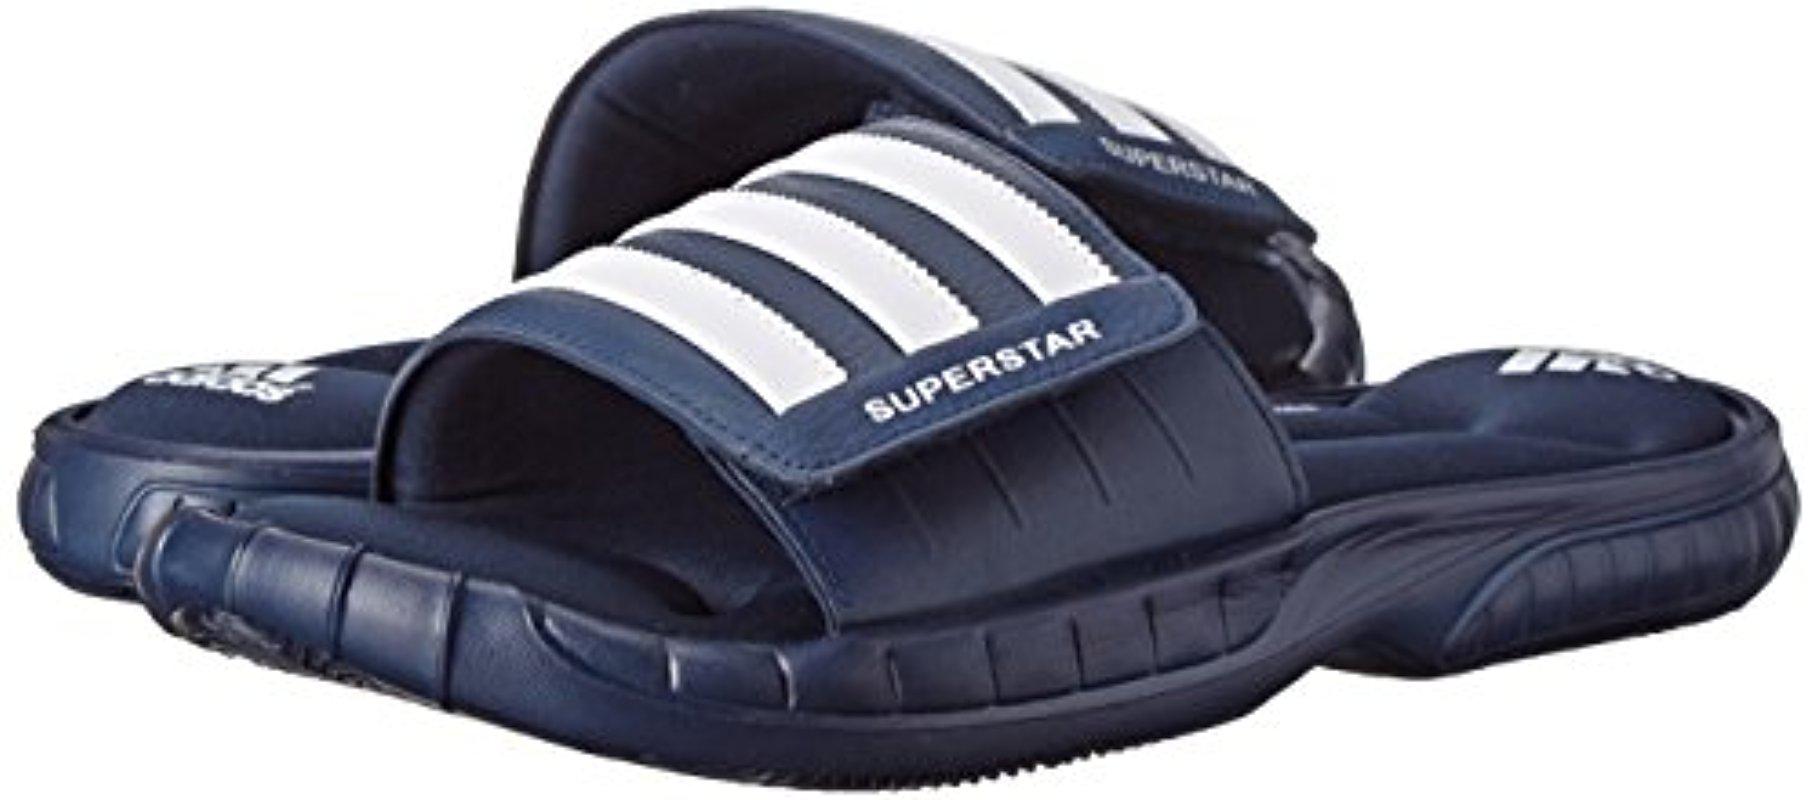 adidas men's superstar 3g slide sandal uk